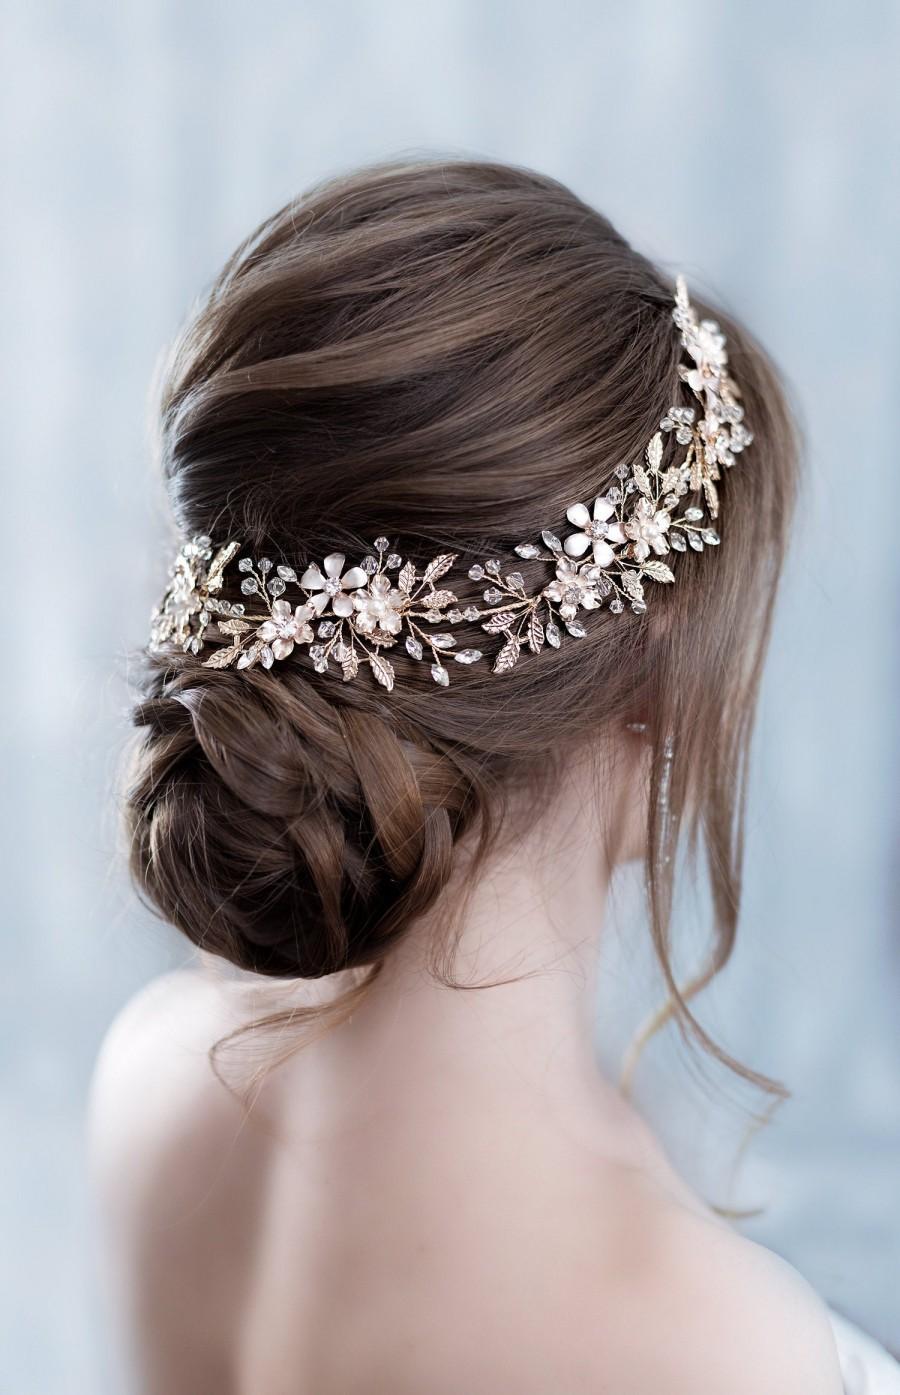 زفاف - Wedding headband Crystal hairpiece Rhinestone headpiece Flower Bridal Headpiece With Crystals Wedding hair accessories Bridal hair piece